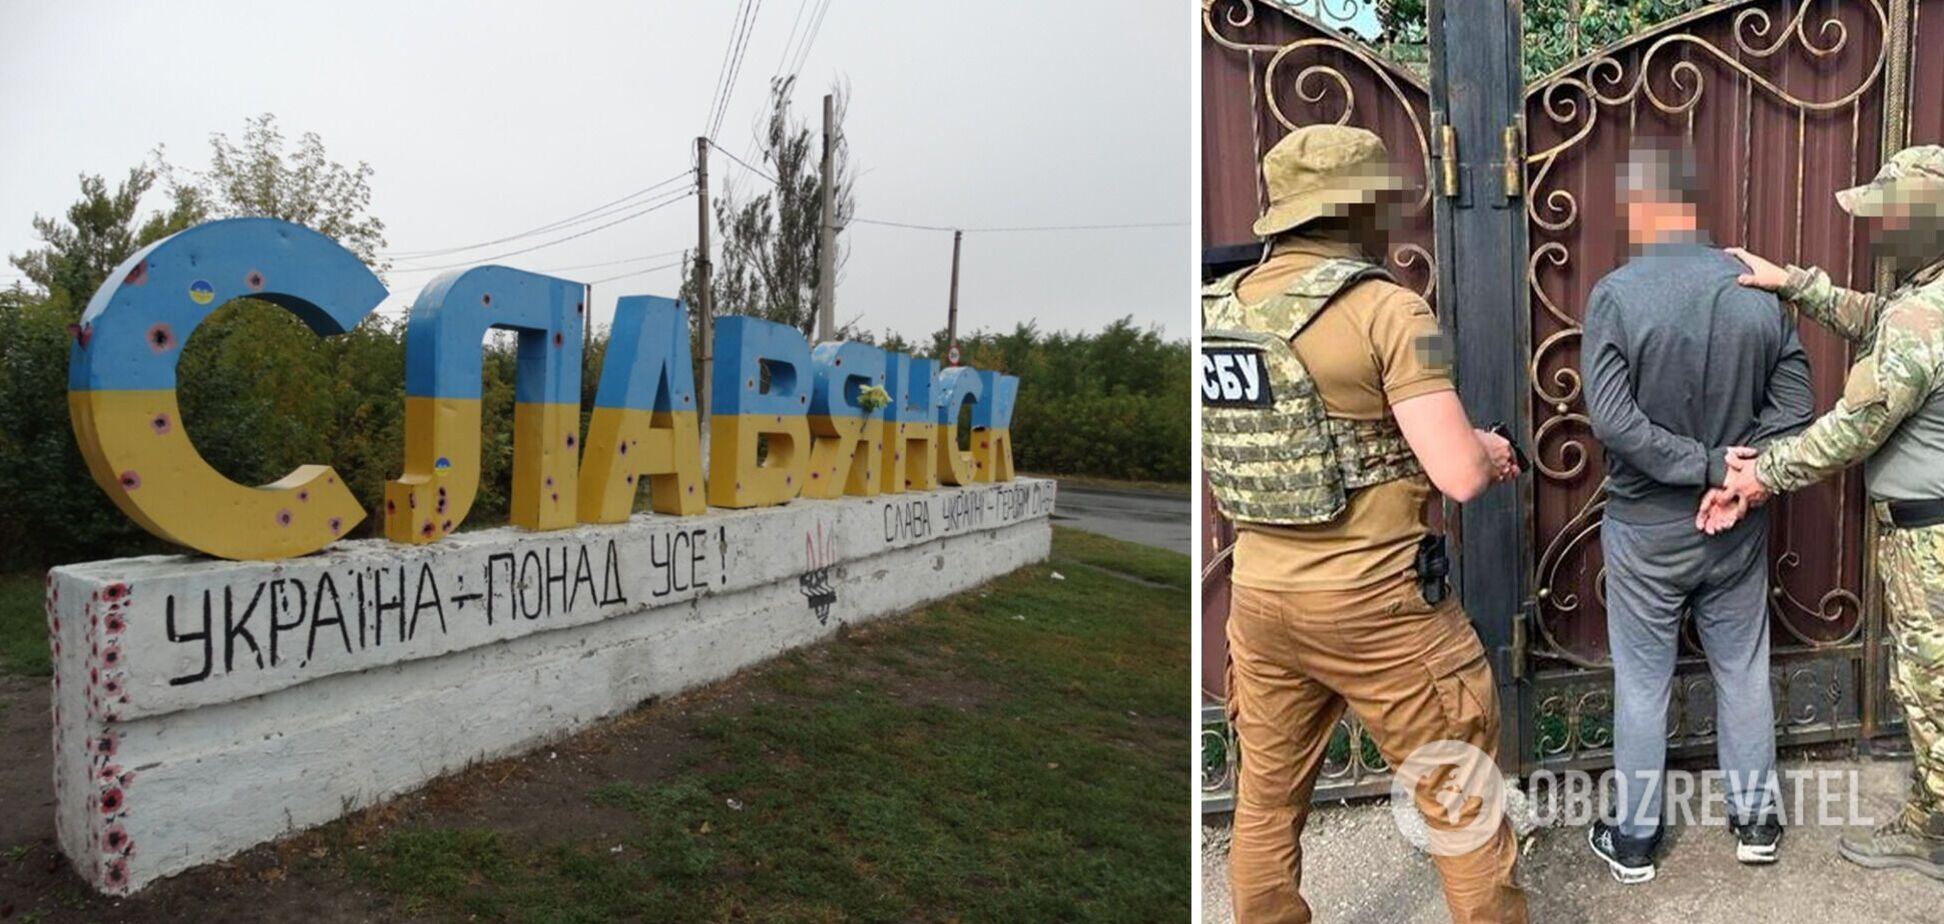 СБУ задержала российского информатора, который 'сливал' ФСБ геолокации украинских воинов в Славянске. Фото